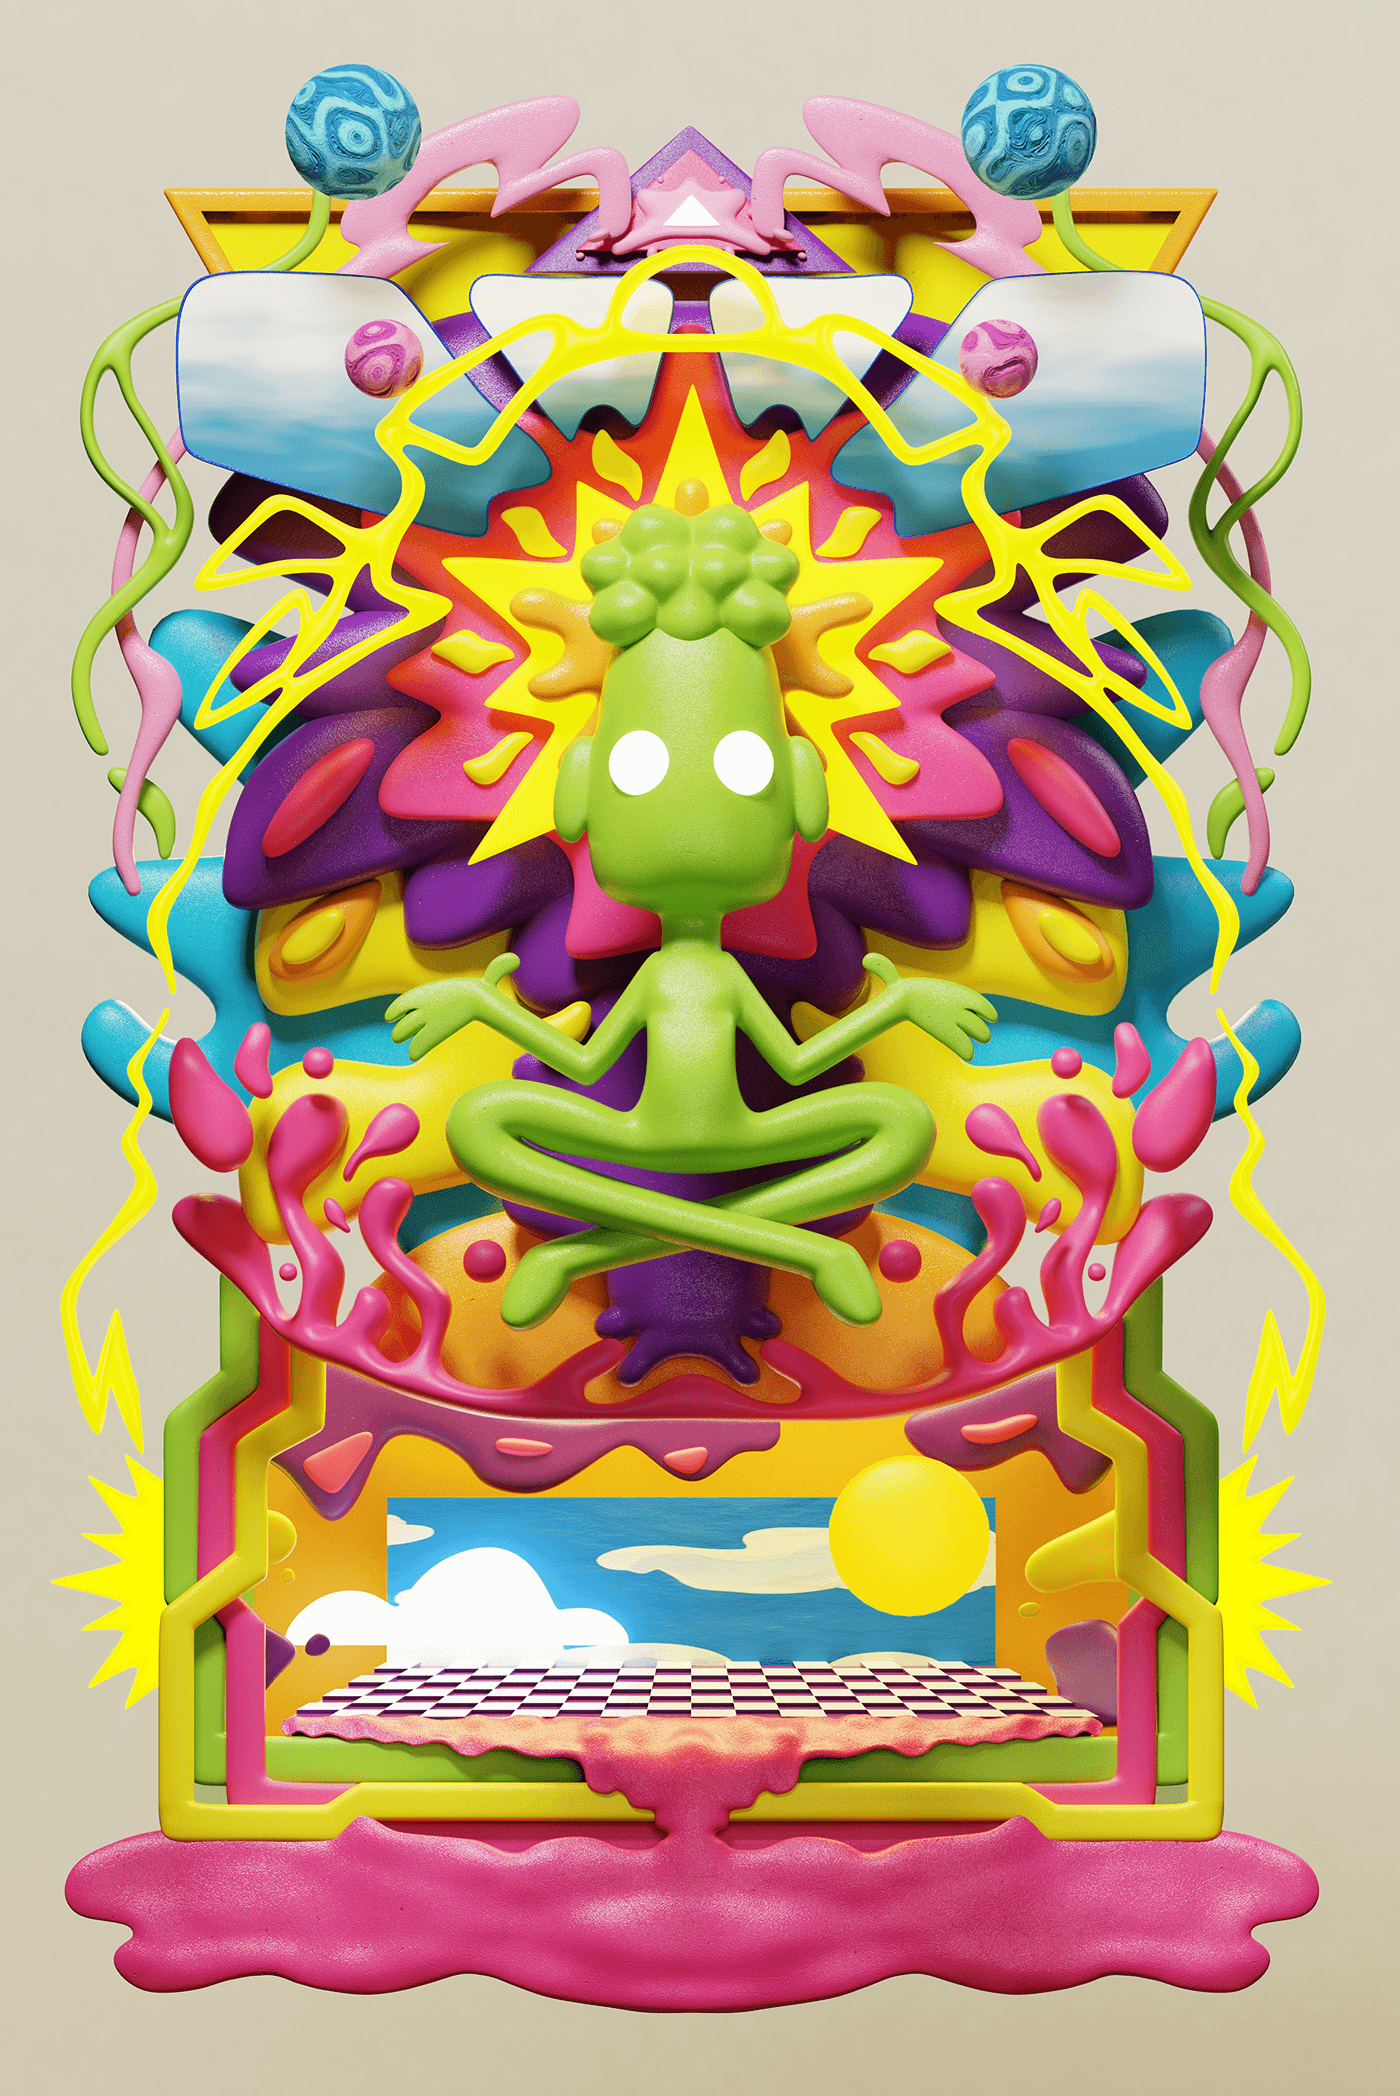 3D blender Digital Art  ILLUSTRATION  poster Character design  cartoon composition psychedelic 2D